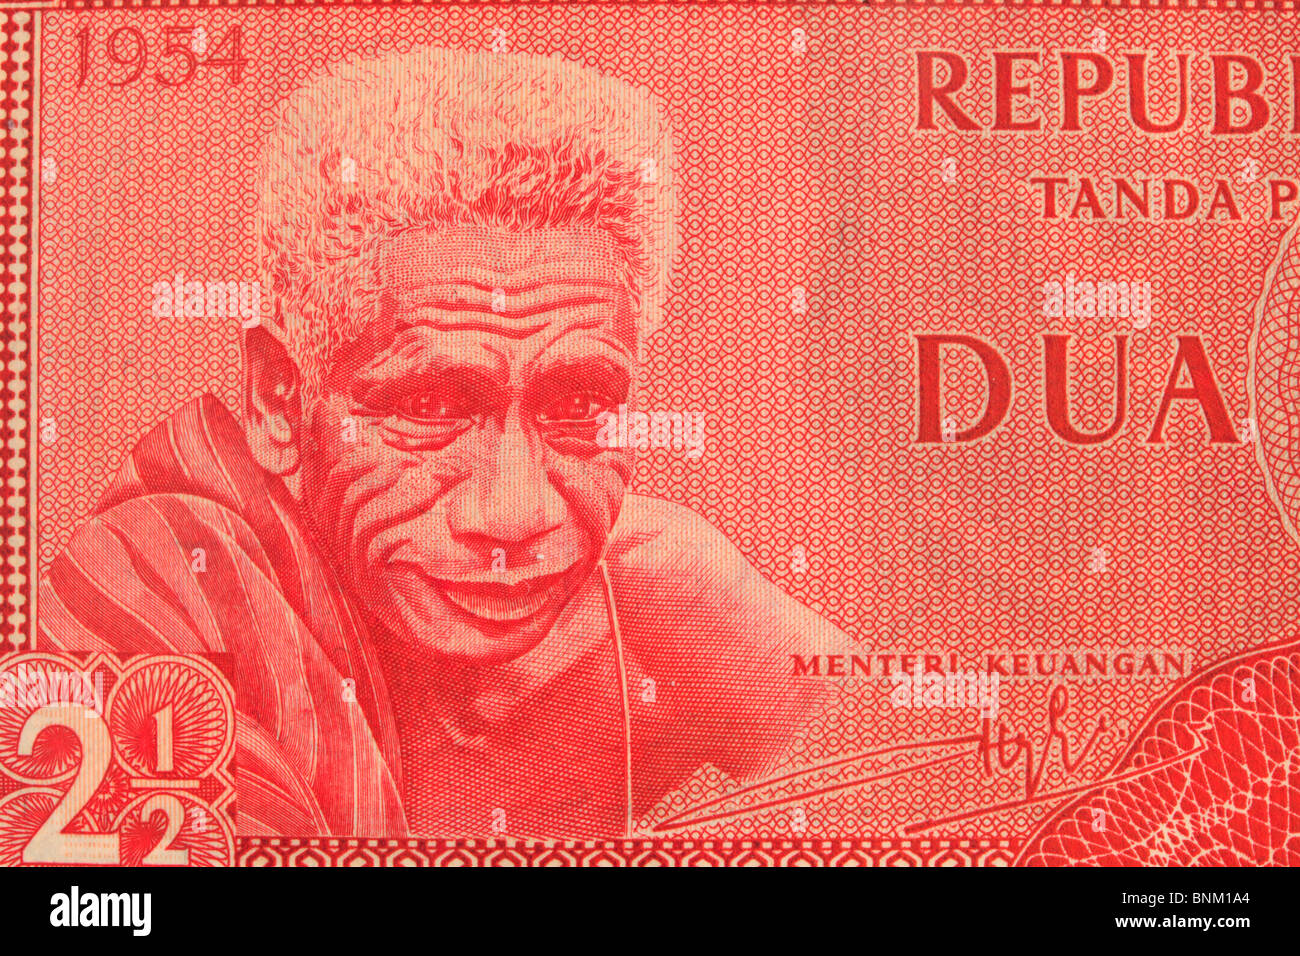 Vintage monnaie indonésienne bank note close up d'un vieil homme, tout rouge Banque D'Images